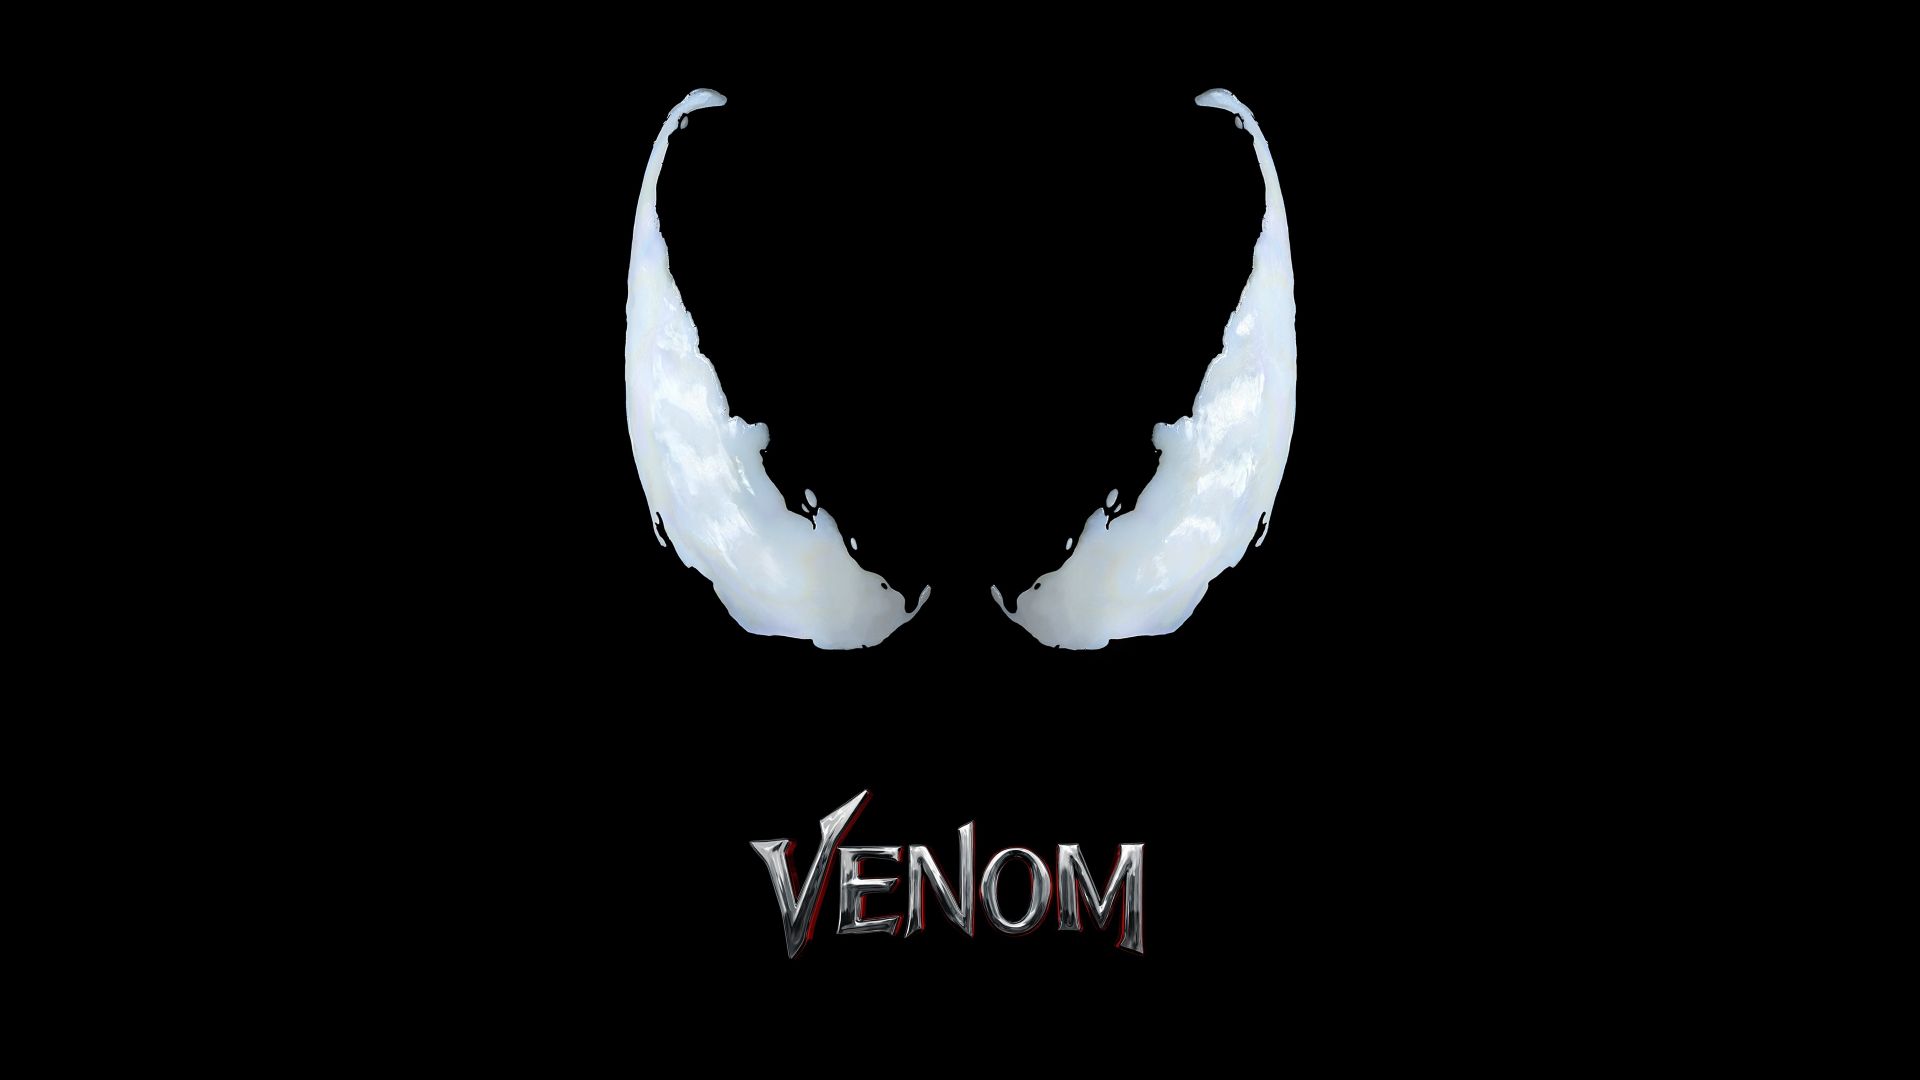 Venom, poster, 8k (horizontal)